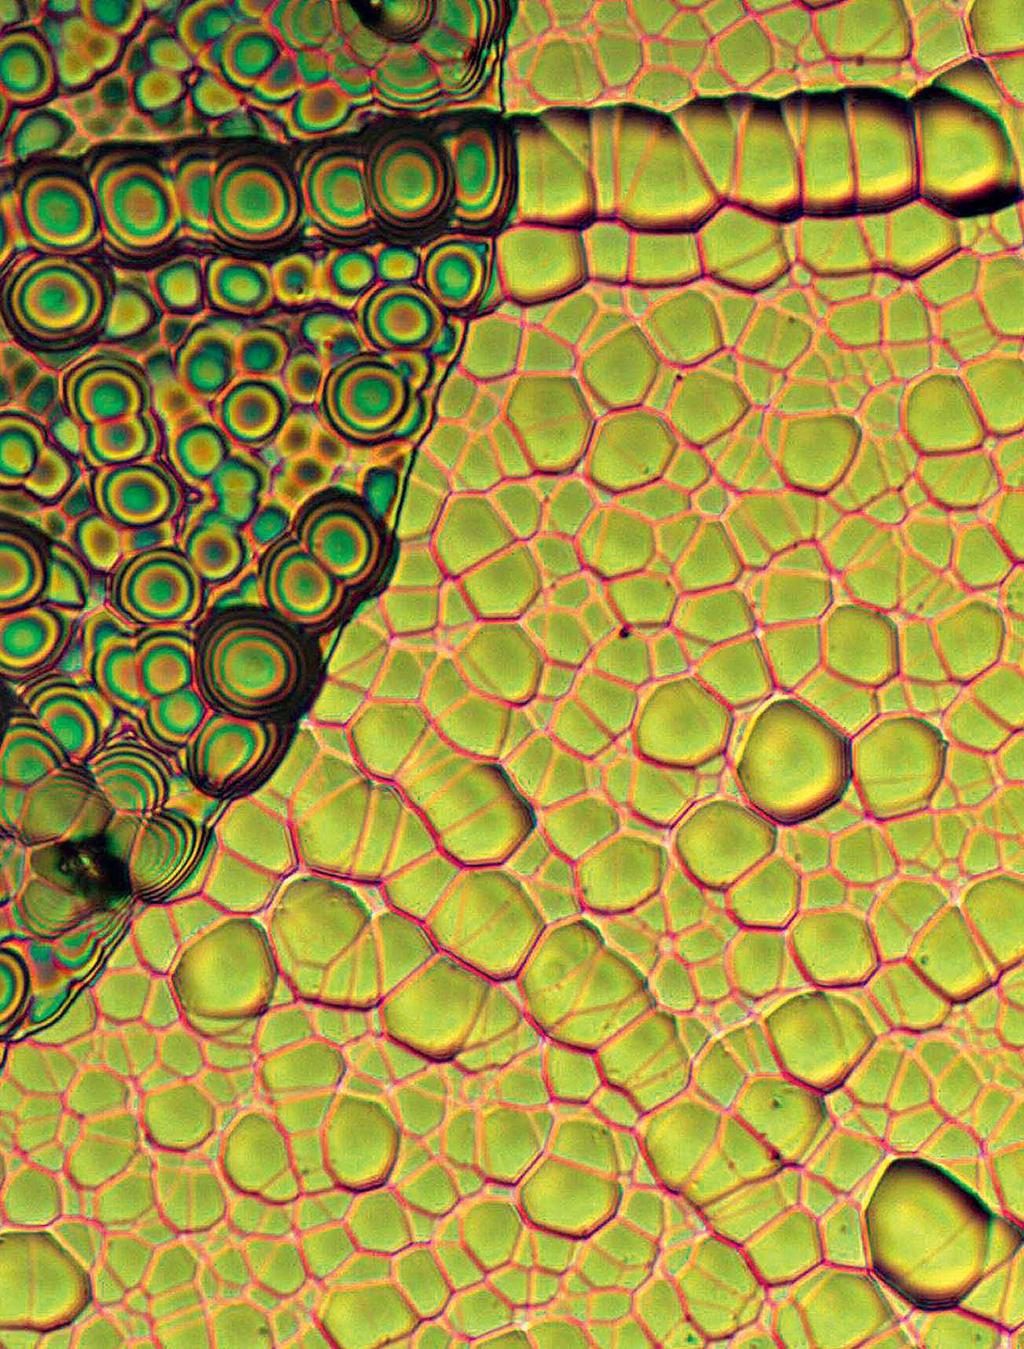 Tavo Romann VEETILK RÄNI PINNAL Tartu Ülikooli Keemia Instituudis optilise mikroskoobiga Meiji MX8500 tehtud pilt räni pinnast, mida on lihvimiseks veega niisutatud. Pildi suurem mõõde on 413 µm.